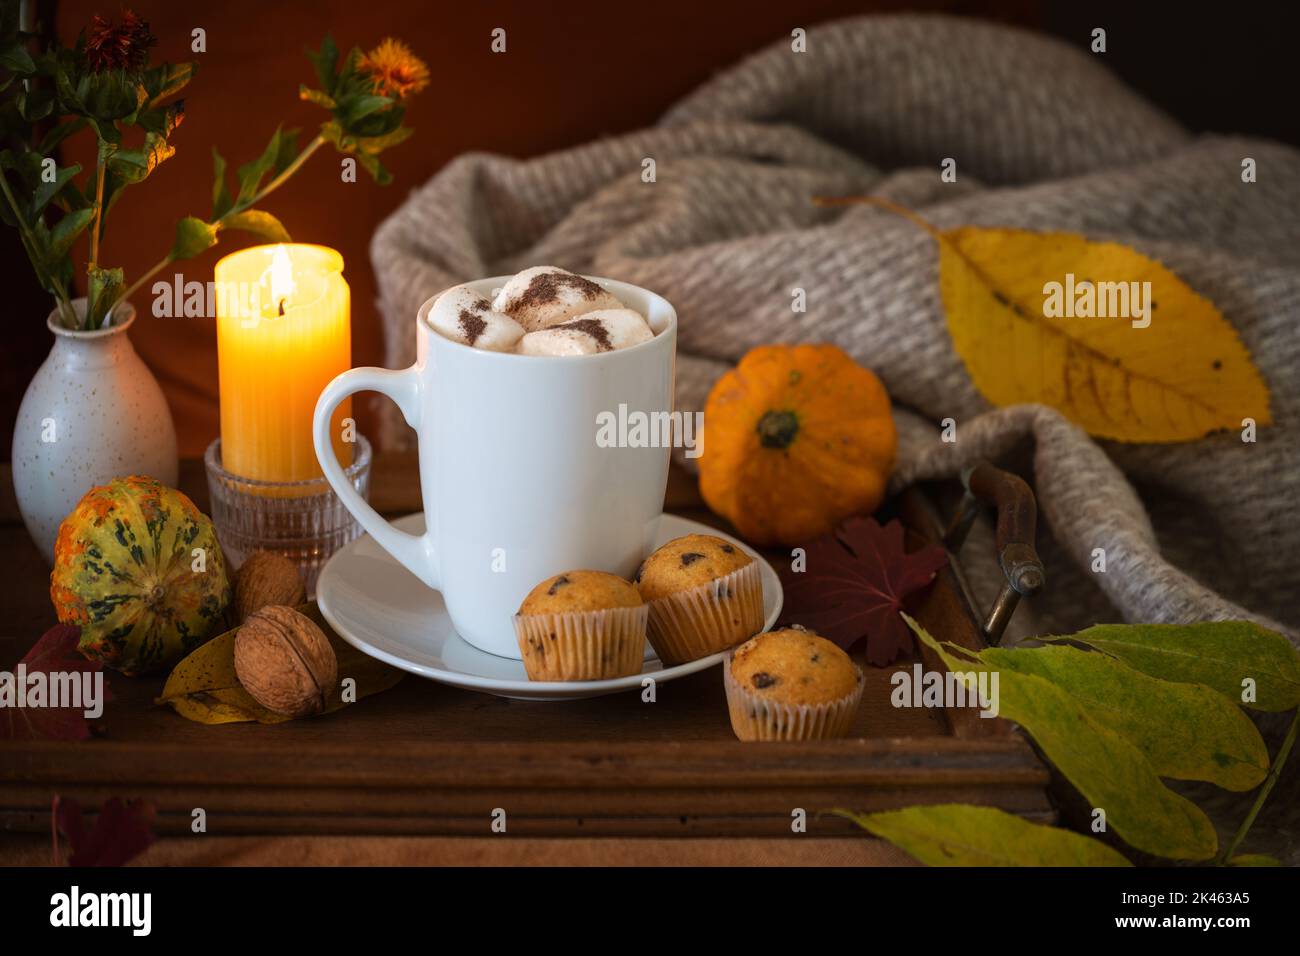 Cioccolata calda con marshmallows, servita con muffin, candele e decorazioni autunnali su un caldo e accogliente sfondo scuro, spazio copia, selecte Foto Stock